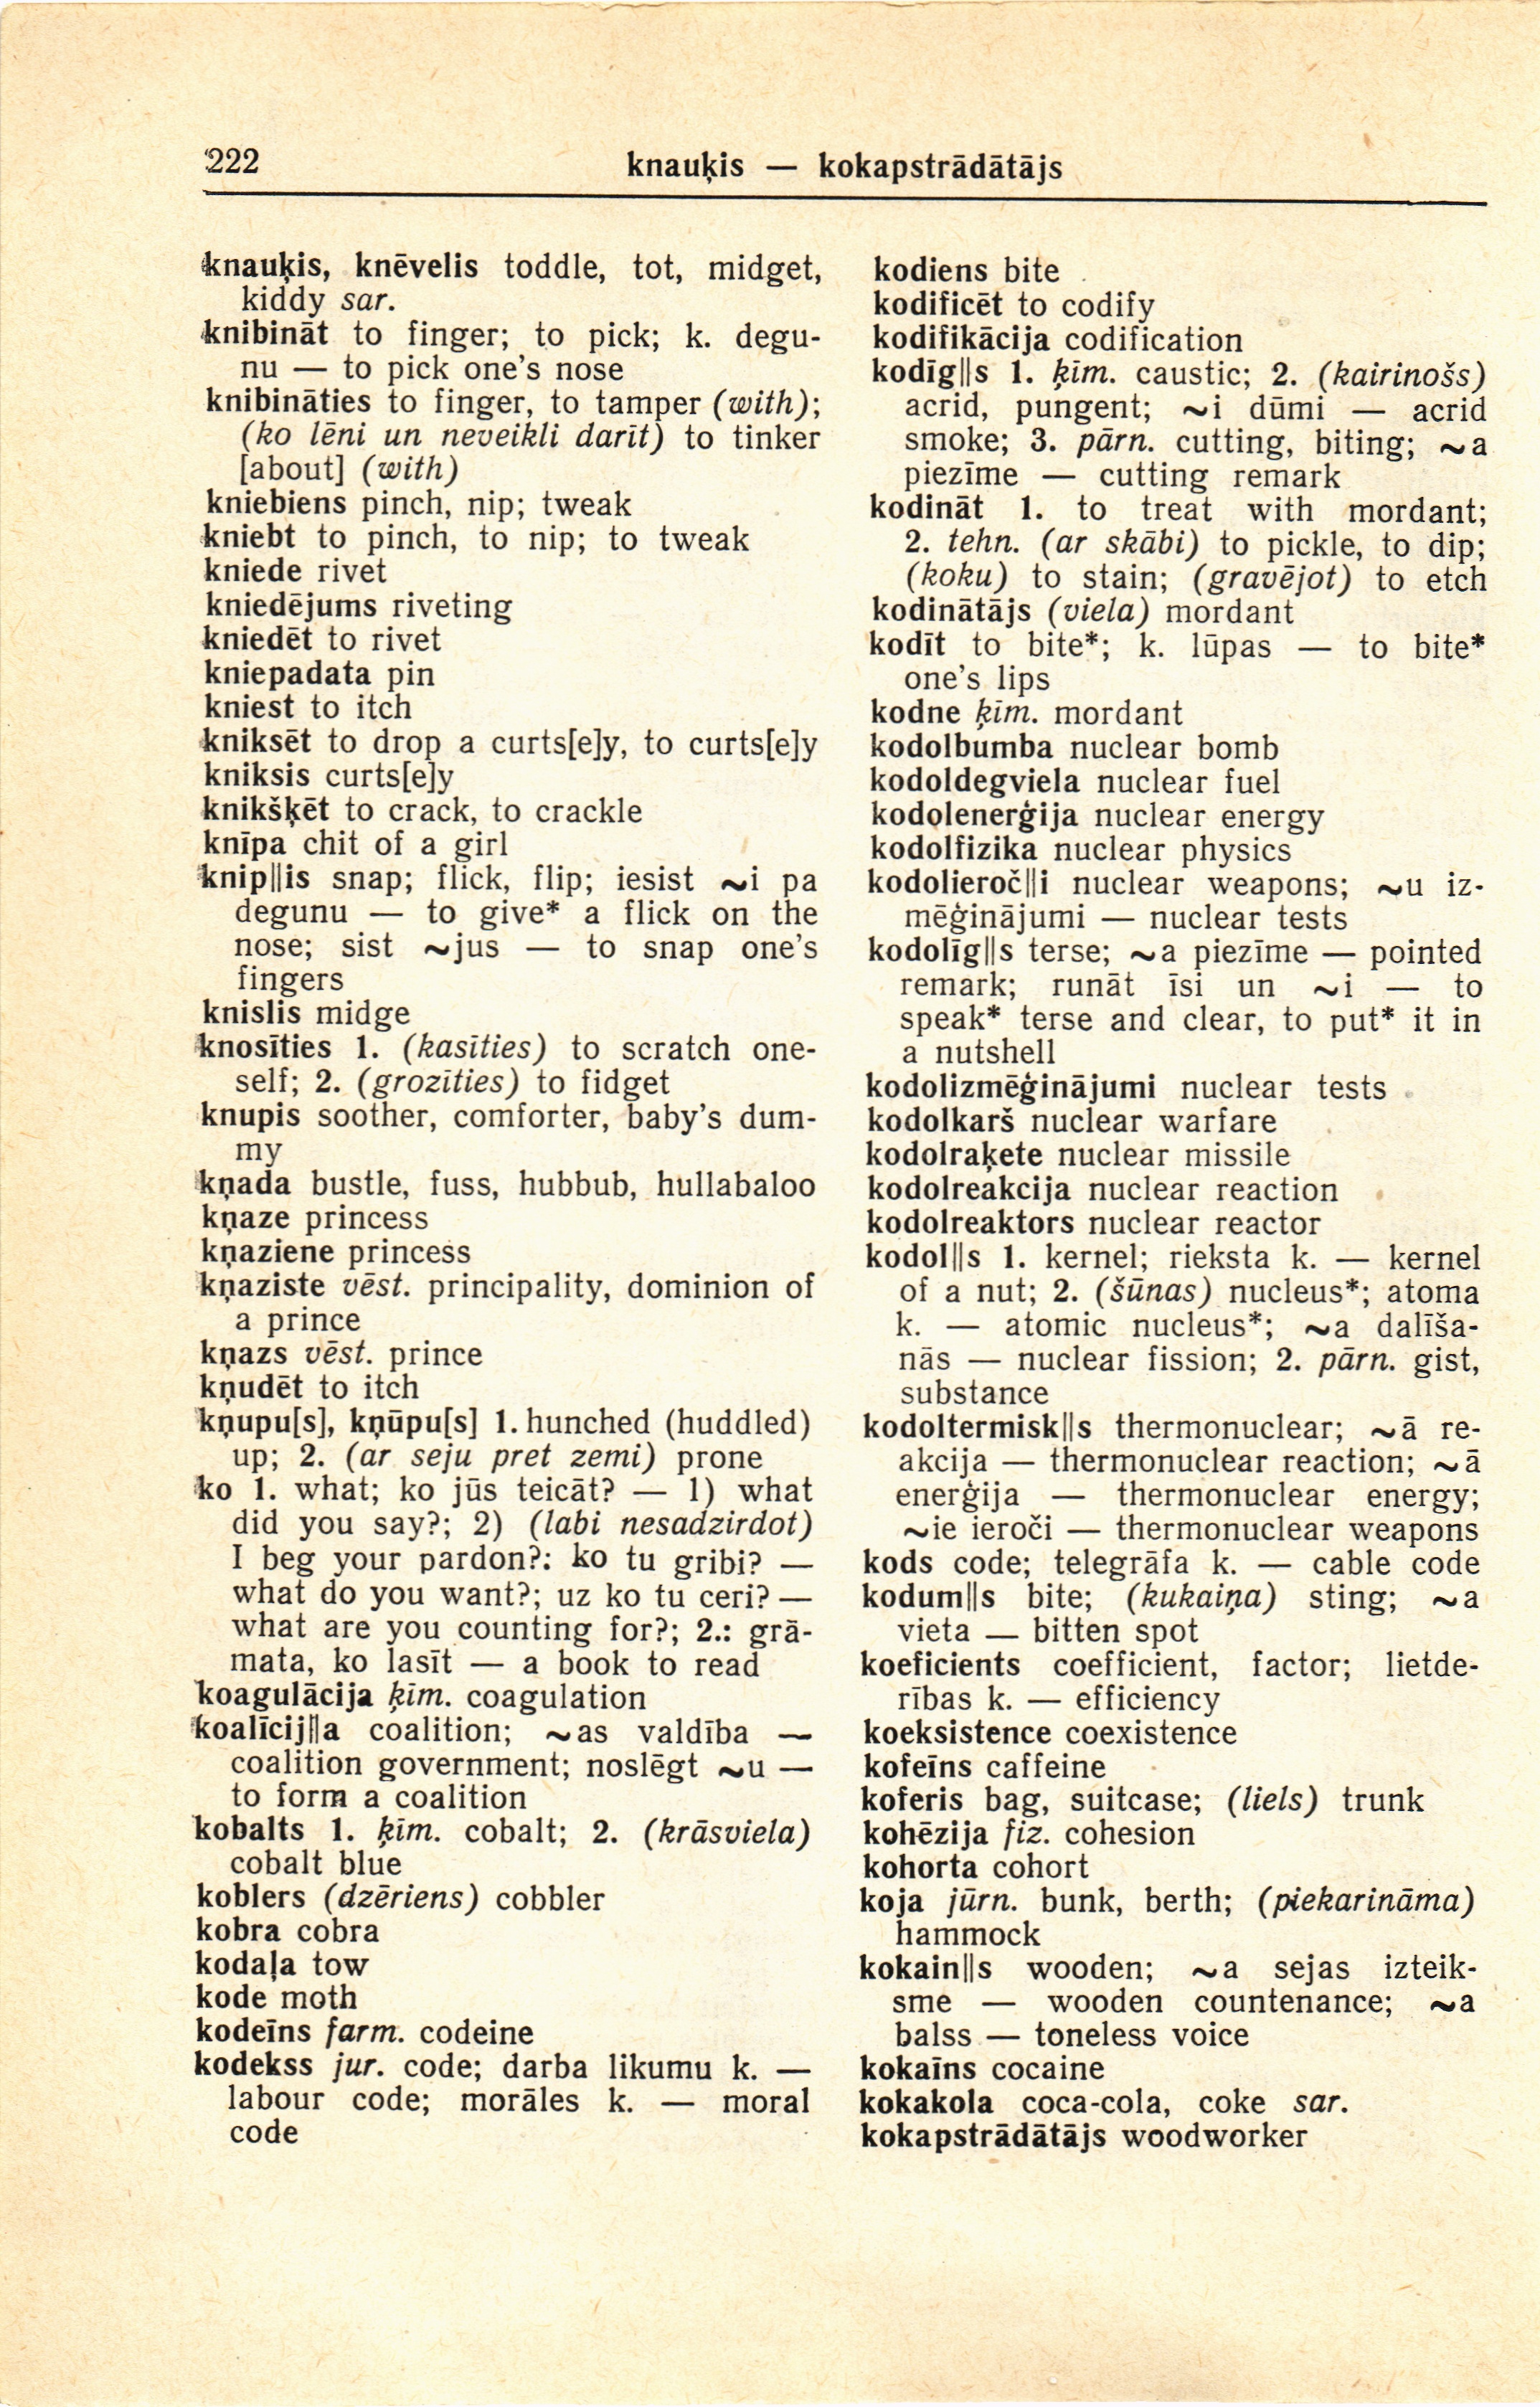 222 (Latvian-English dictionary : Latviesu-anglu vardnica)